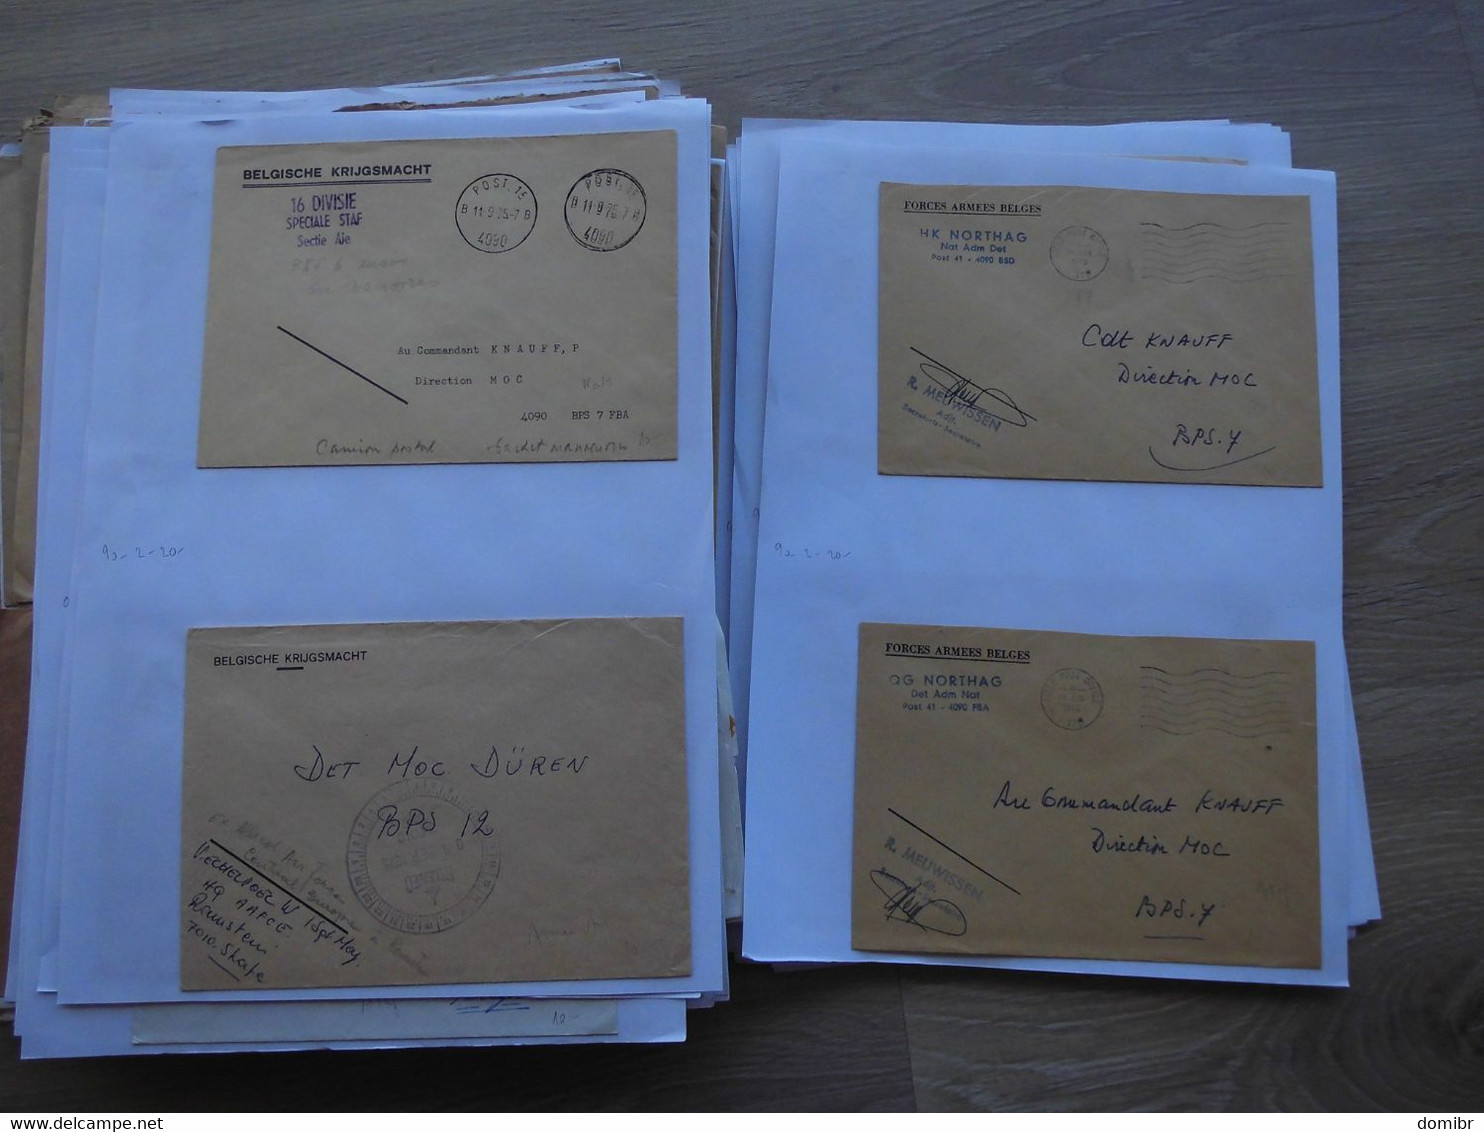 Belgique 230 lettres courrier militaire Forces Armées Belges belgische krijgsmacht Militair ATAF OTAN NATO